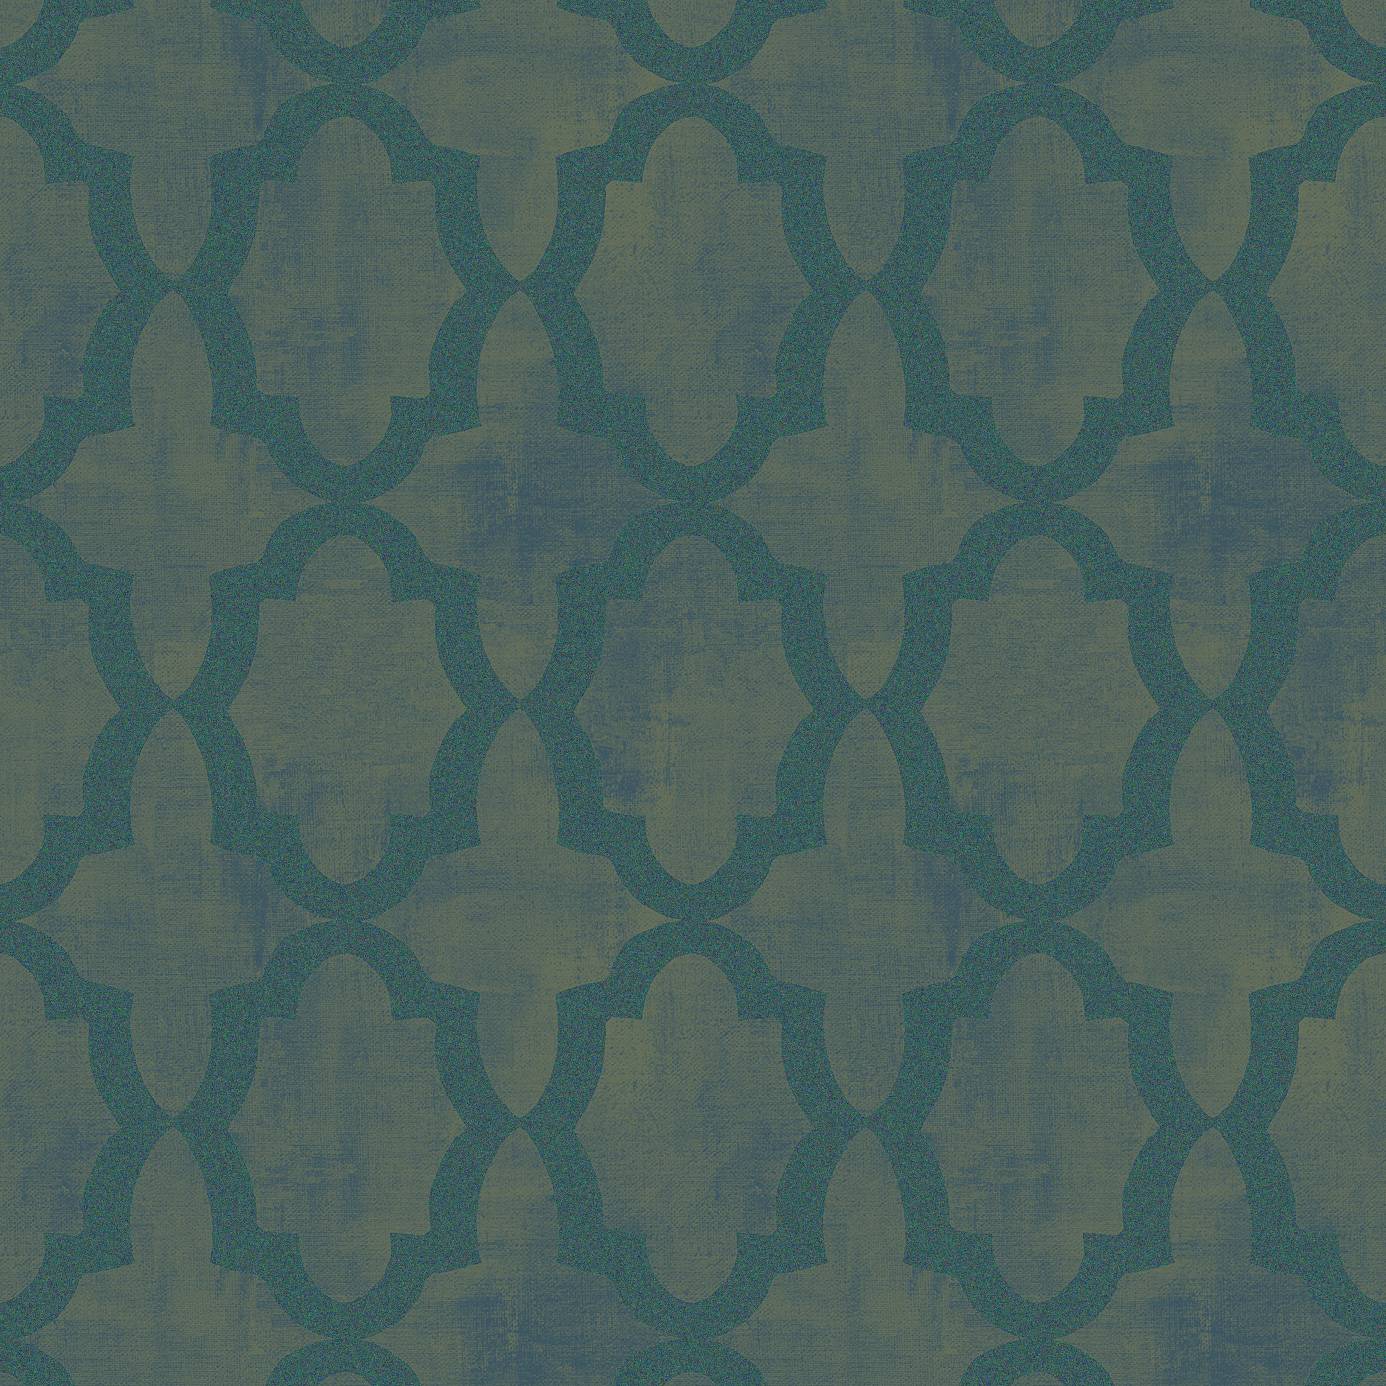 SketchTwenty3 Morocco Iridescent Beads Wallpaper SH00631